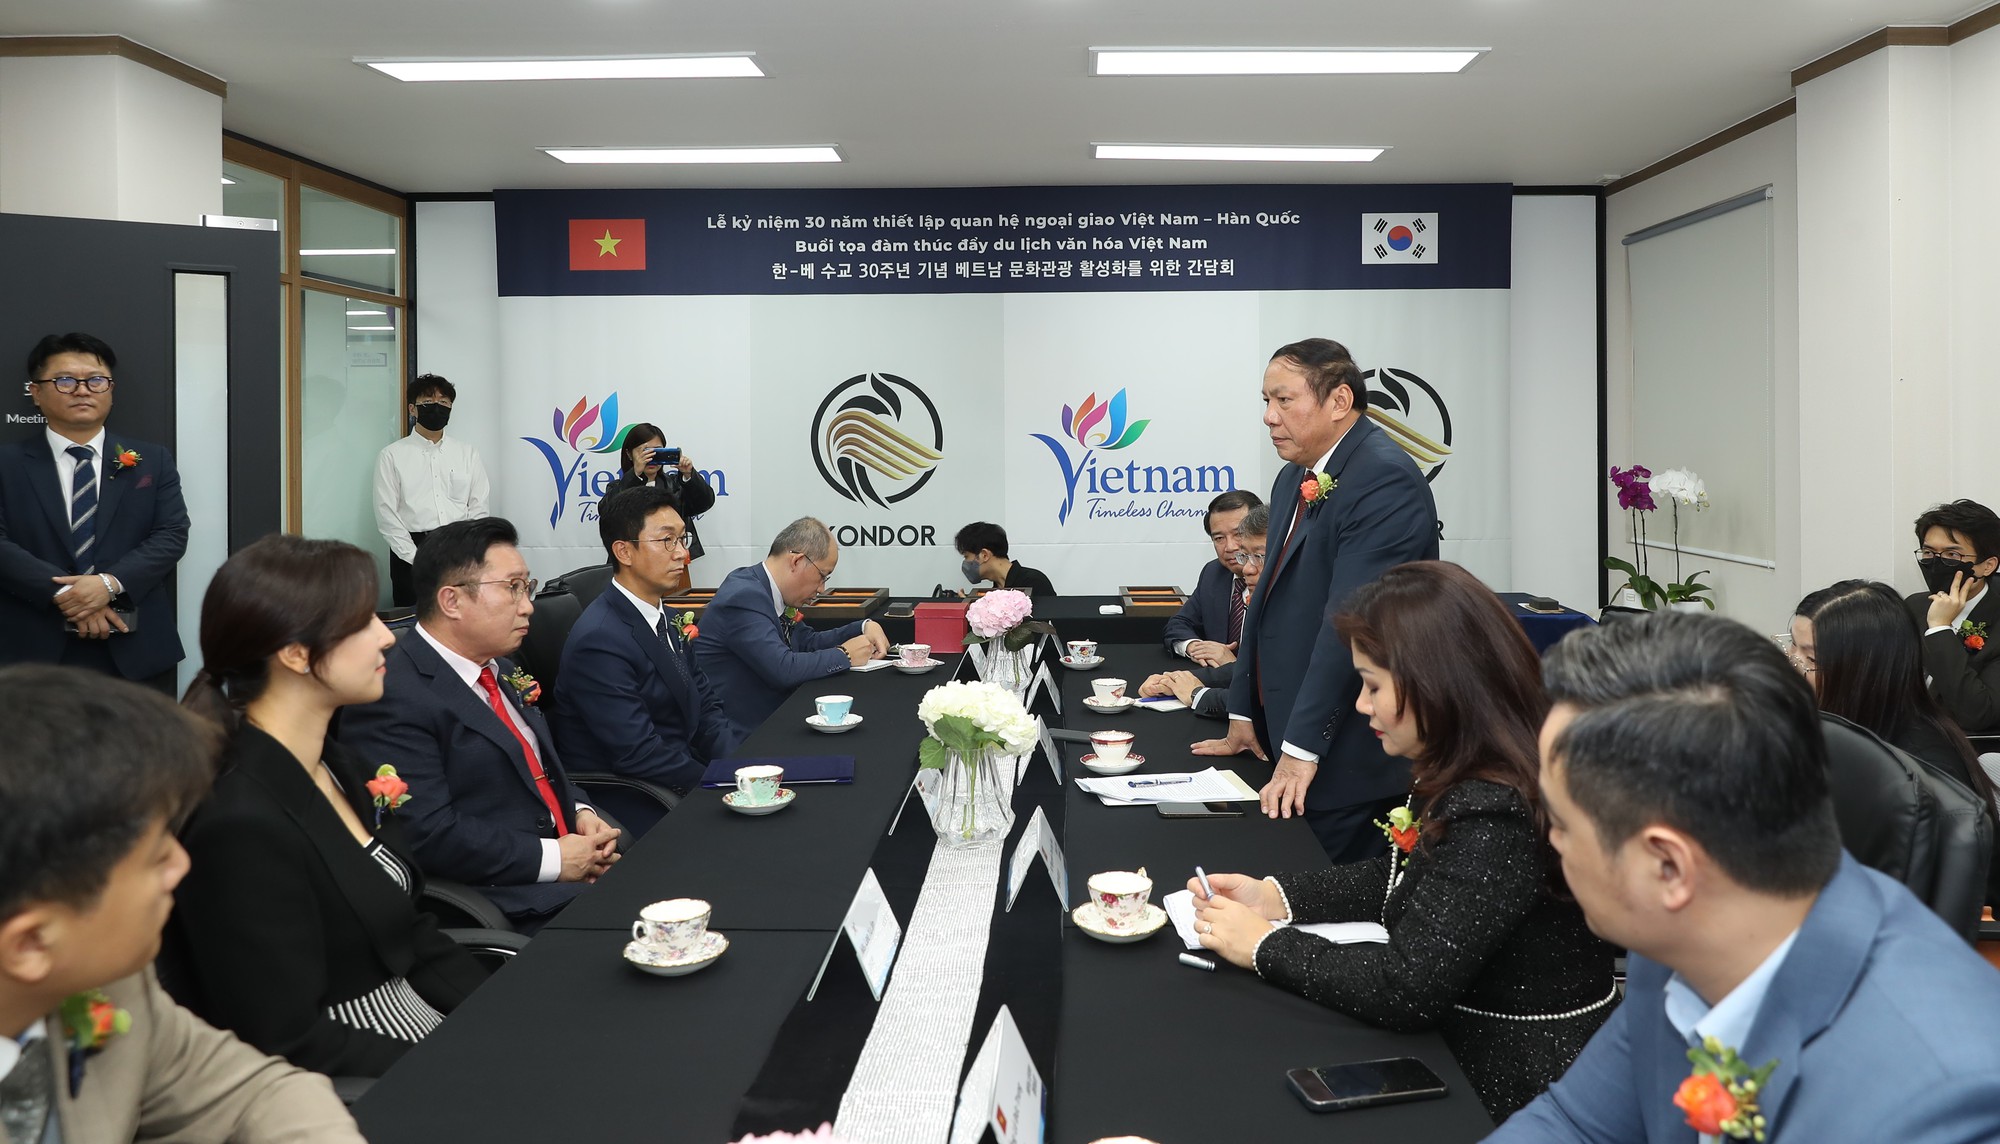 Bộ trưởng Nguyễn Văn Hùng thăm và làm việc tại Văn phòng đại diện xúc tiến Du lịch Việt Nam tại Hàn Quốc - Ảnh 1.